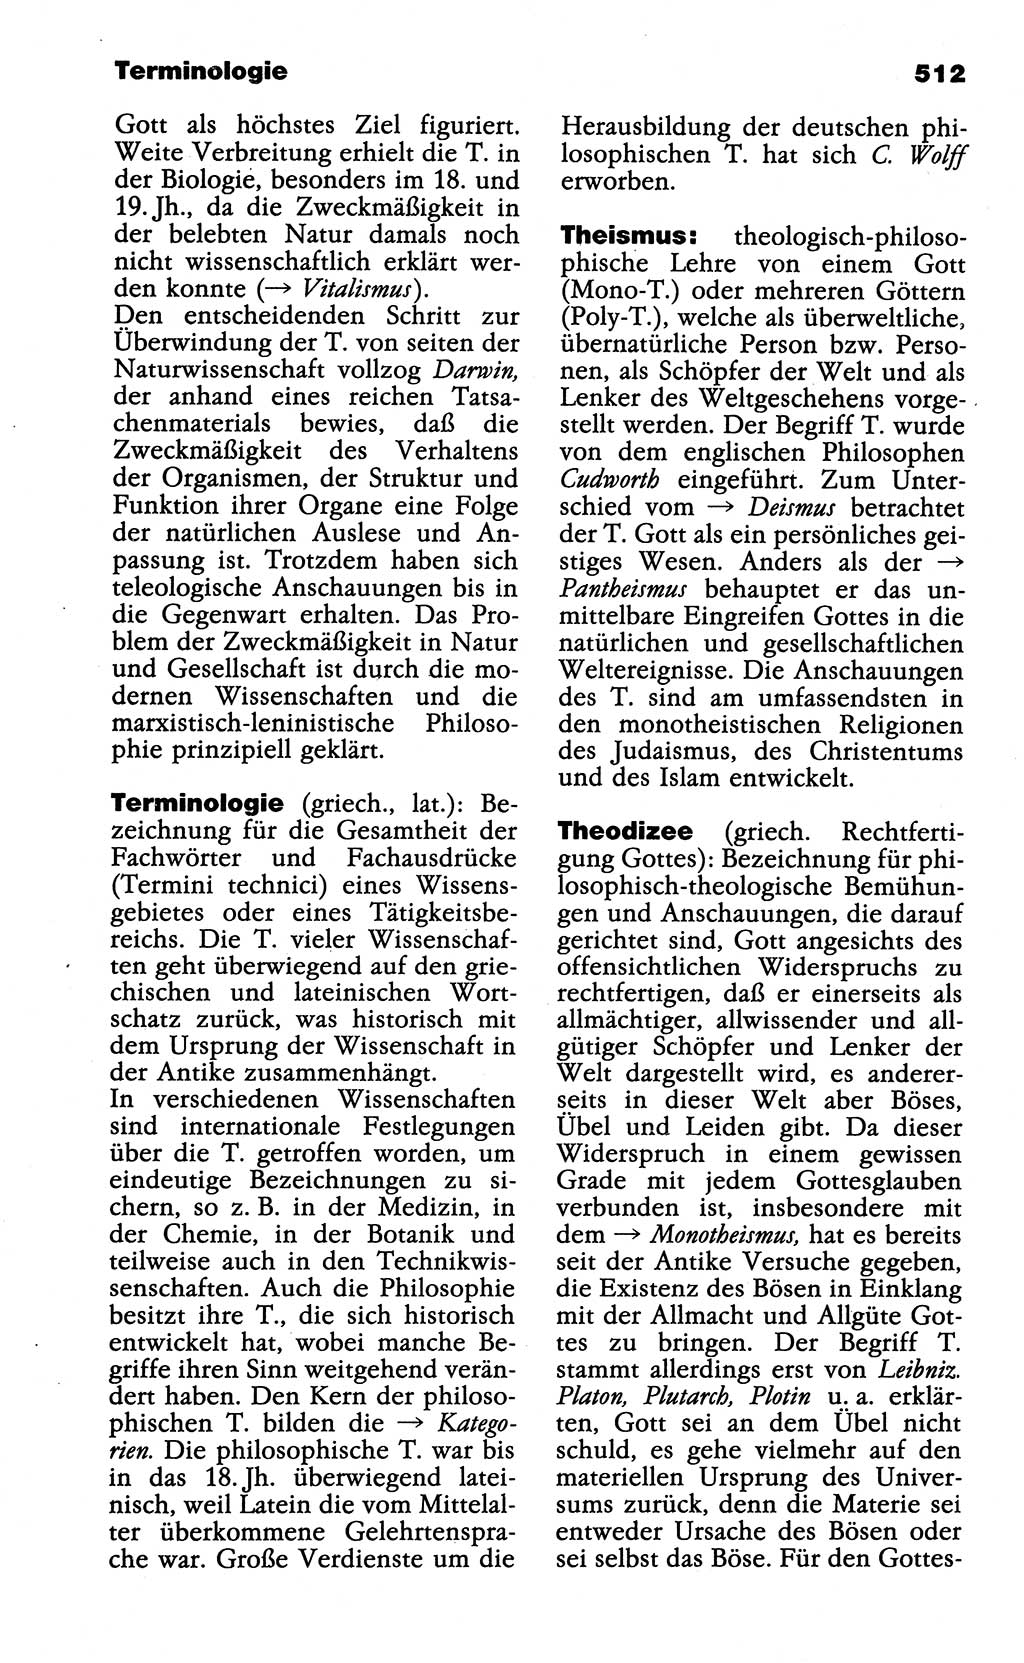 Wörterbuch der marxistisch-leninistischen Philosophie [Deutsche Demokratische Republik (DDR)] 1985, Seite 512 (Wb. ML Phil. DDR 1985, S. 512)